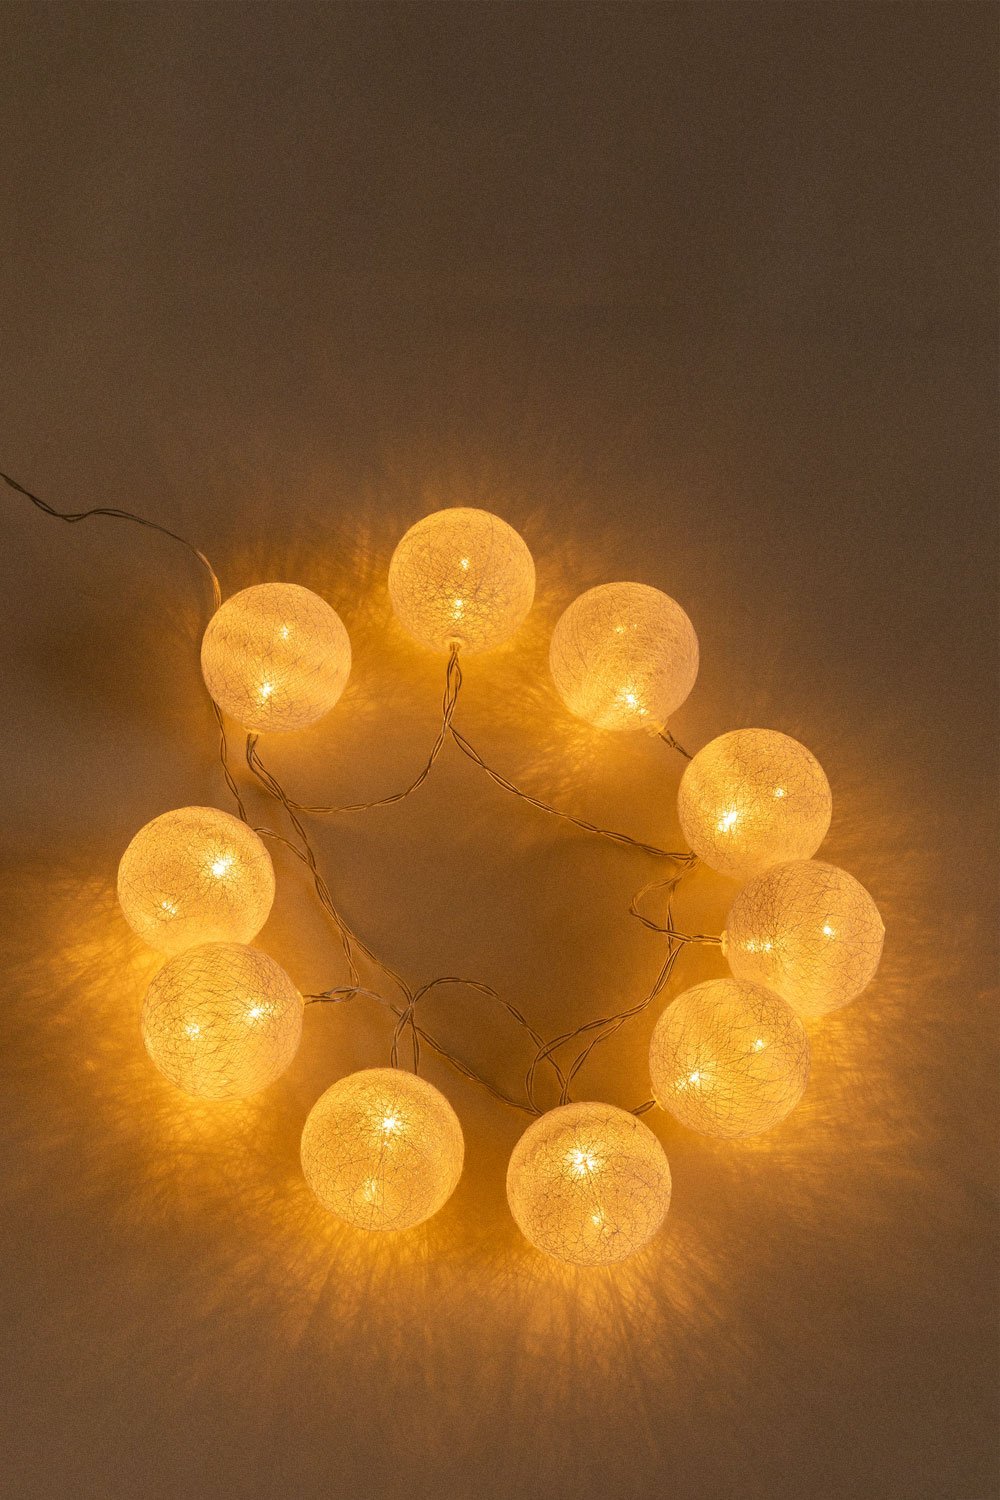 Ghirlanda decorativa di luci LED bianche (1,80 m - 4,50 m) Adda, immagine della galleria 1